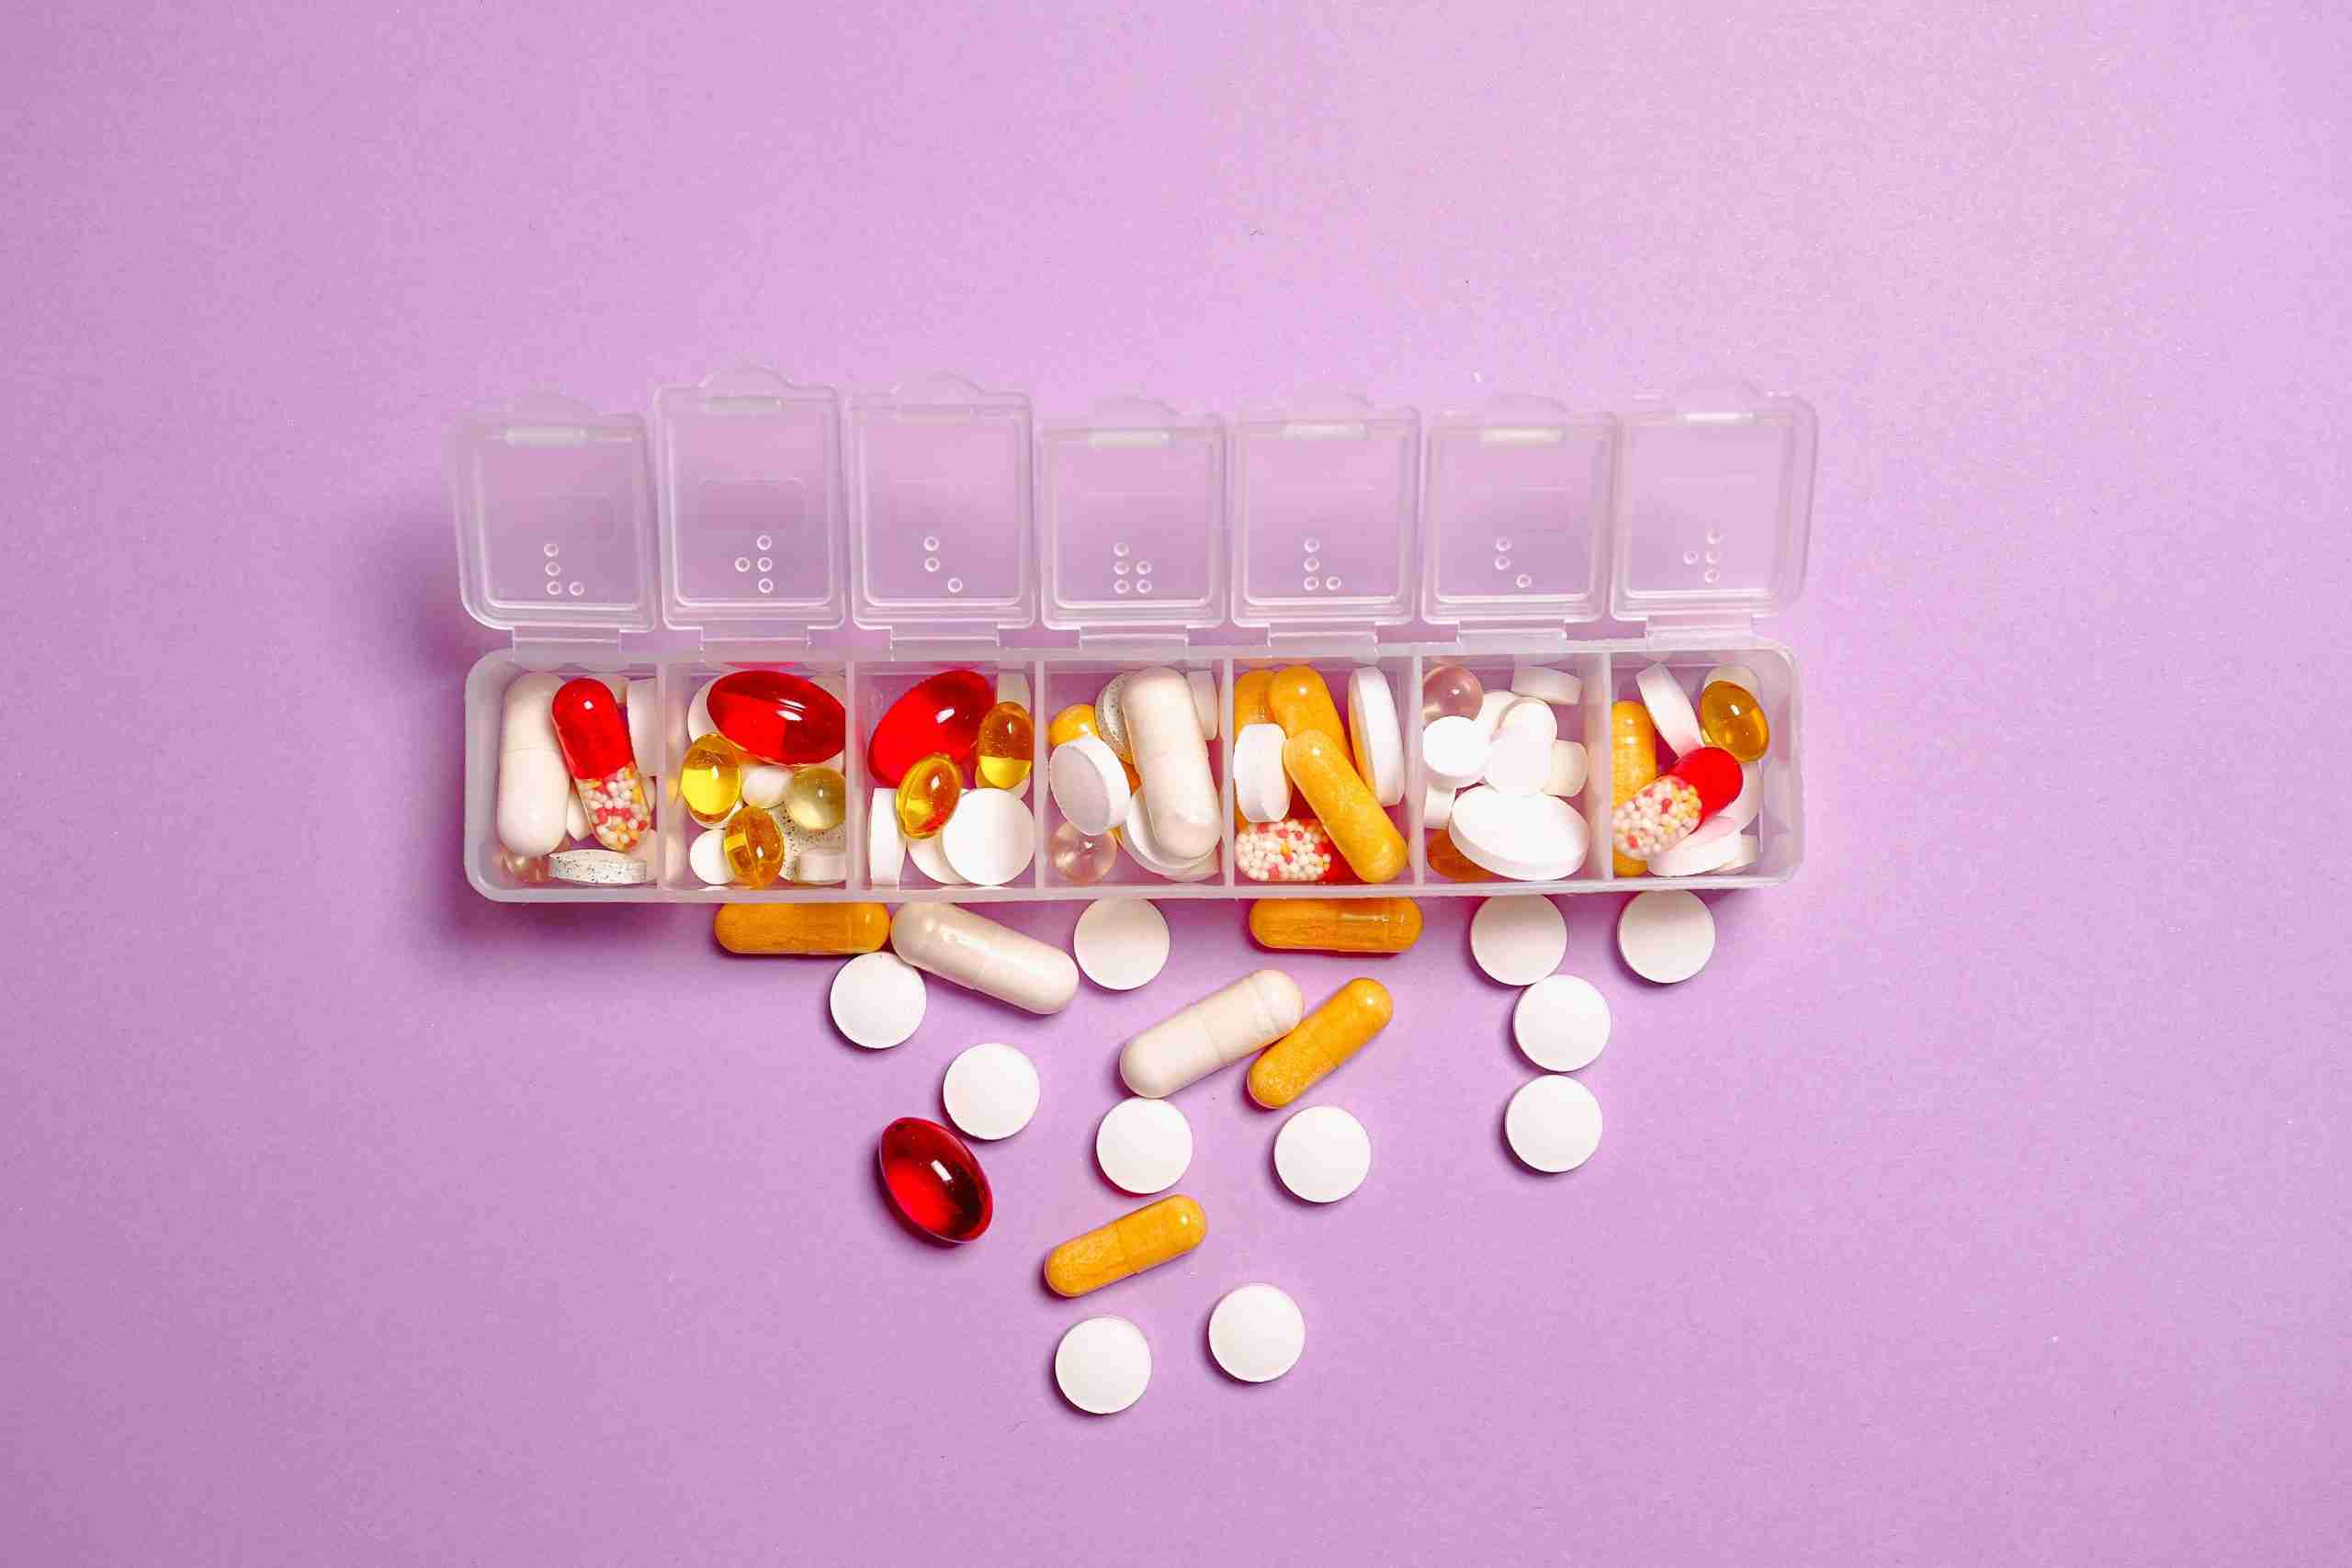 gezonde supplementen op een roze achtergrond in een plastic transparante dispenser gezondheid en schoonheid http://before-night-falls.com/